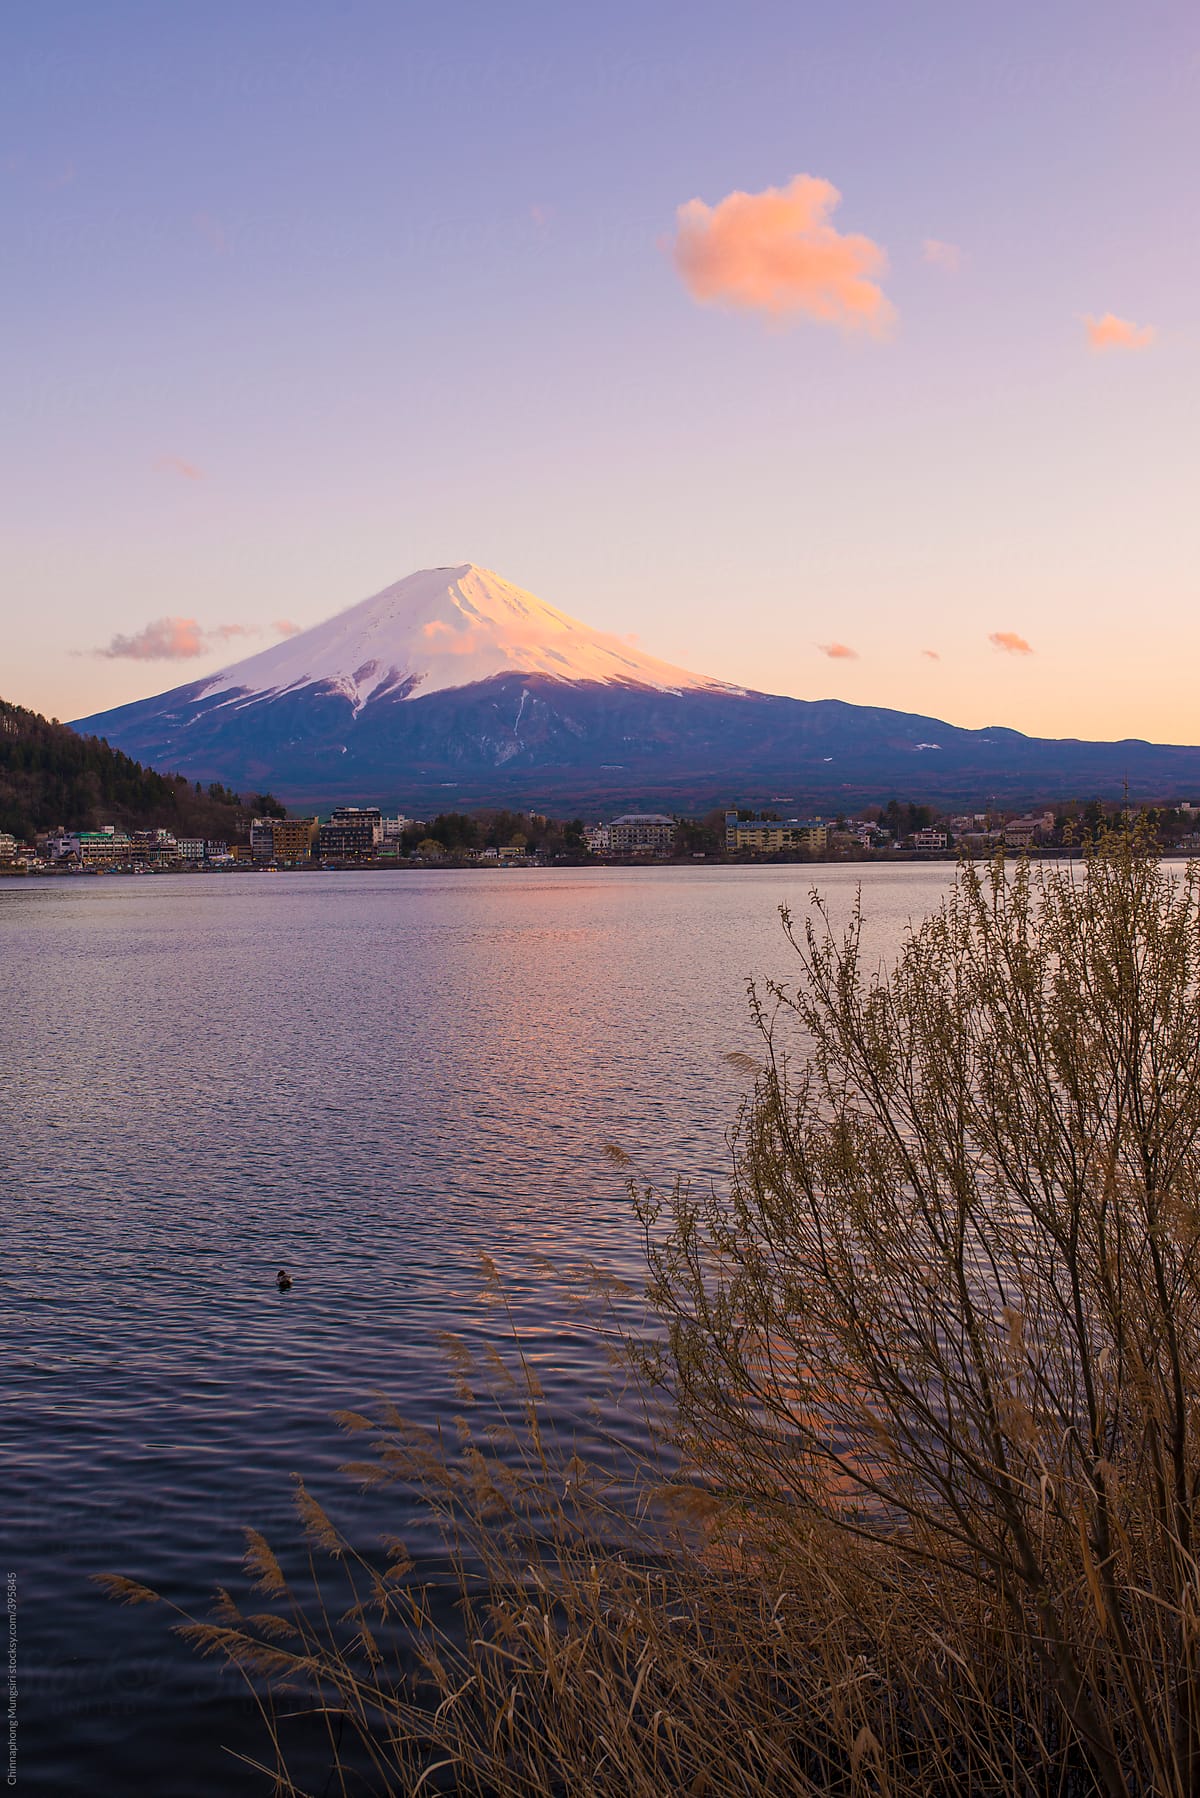 Mountain Fuji at lake Kawaguchi, Japan